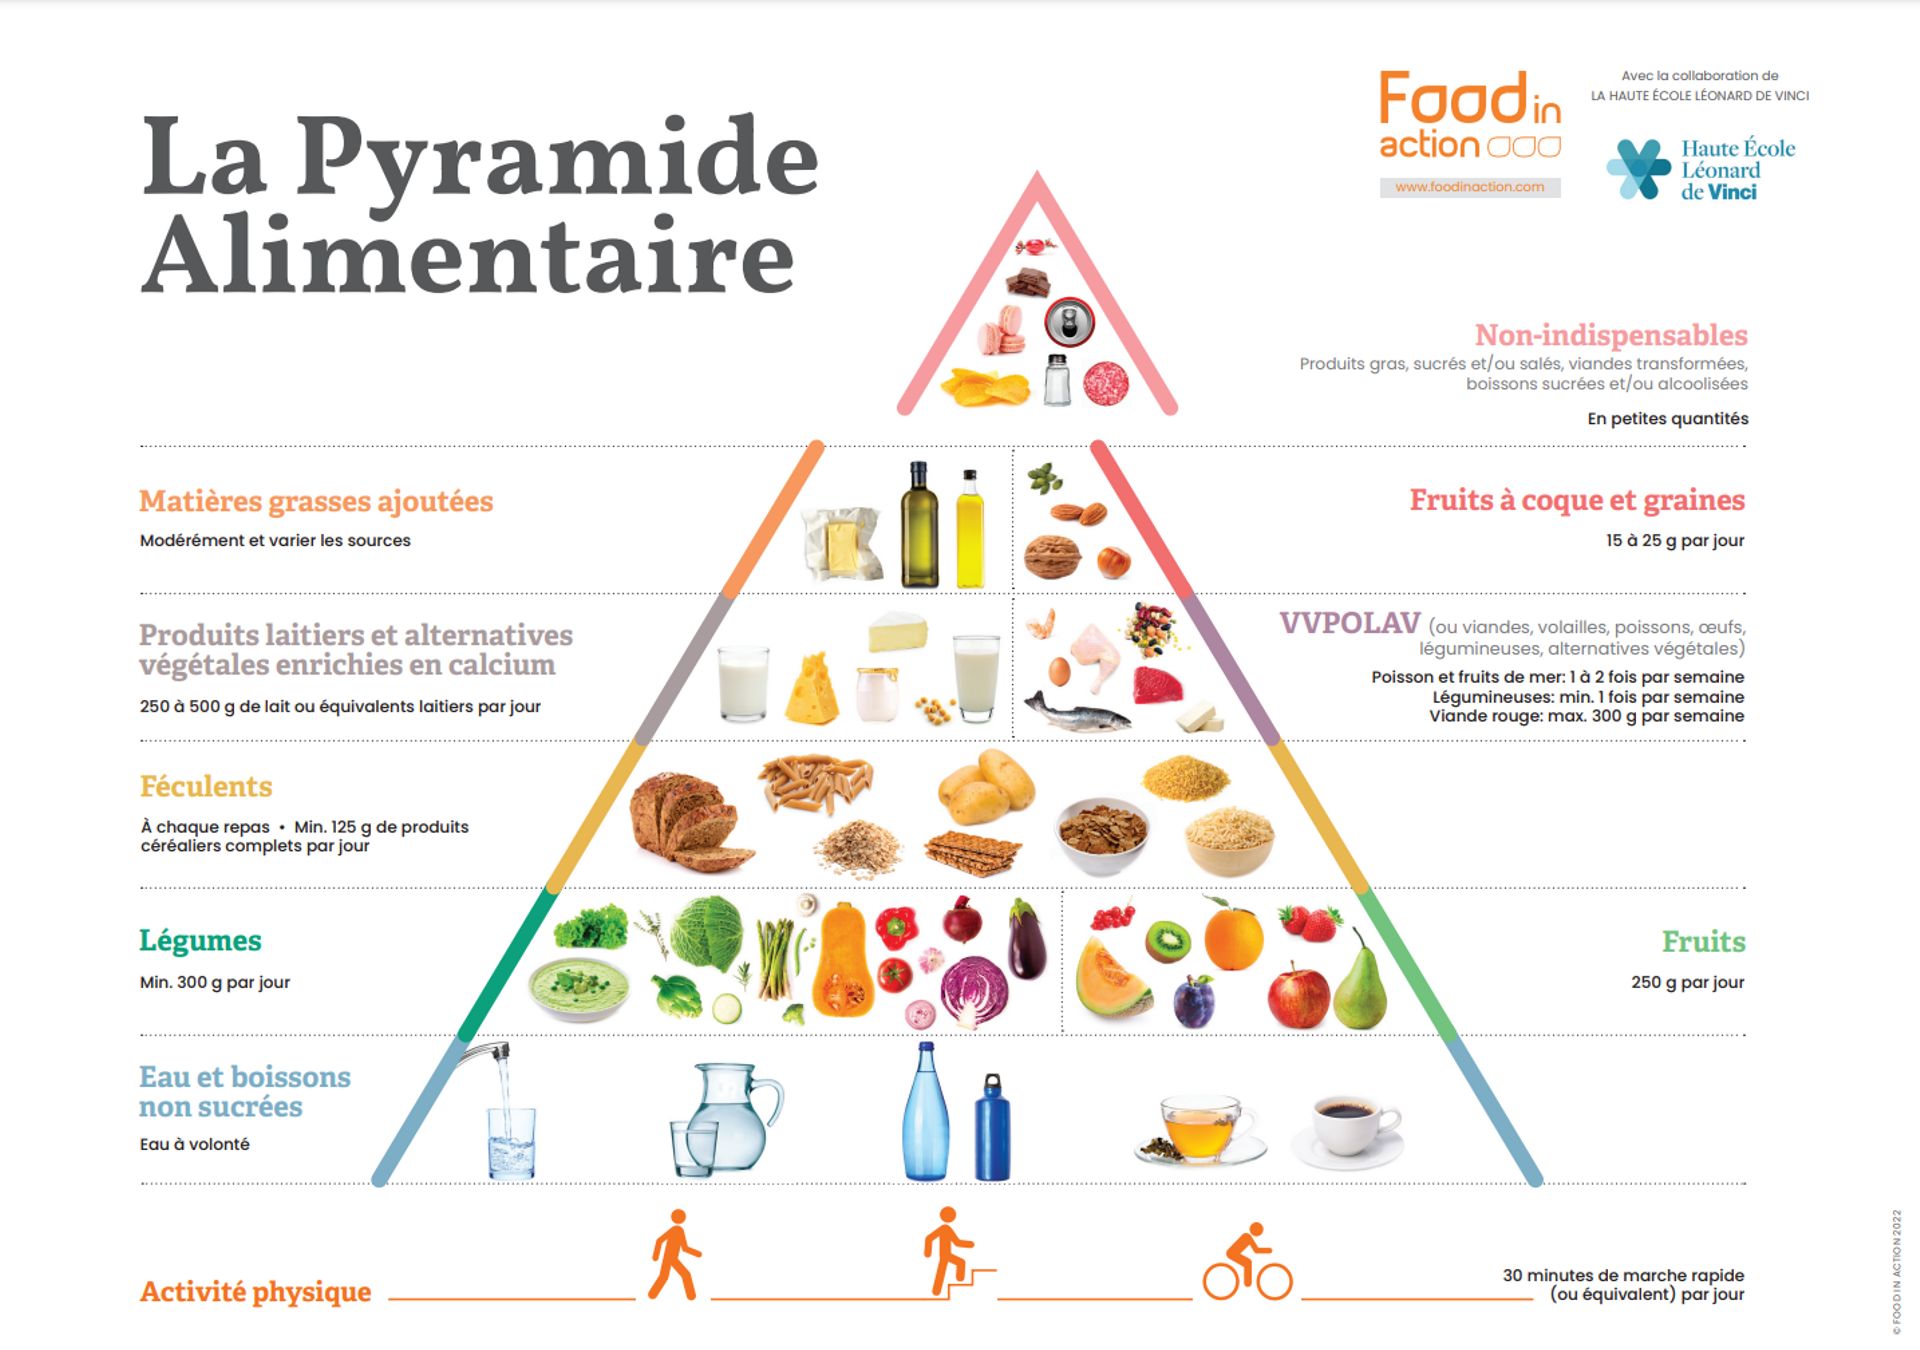 La nouvelle version de la pyramide alimentaire laisse un peu plus de place aux légumes qu’aux fruits.